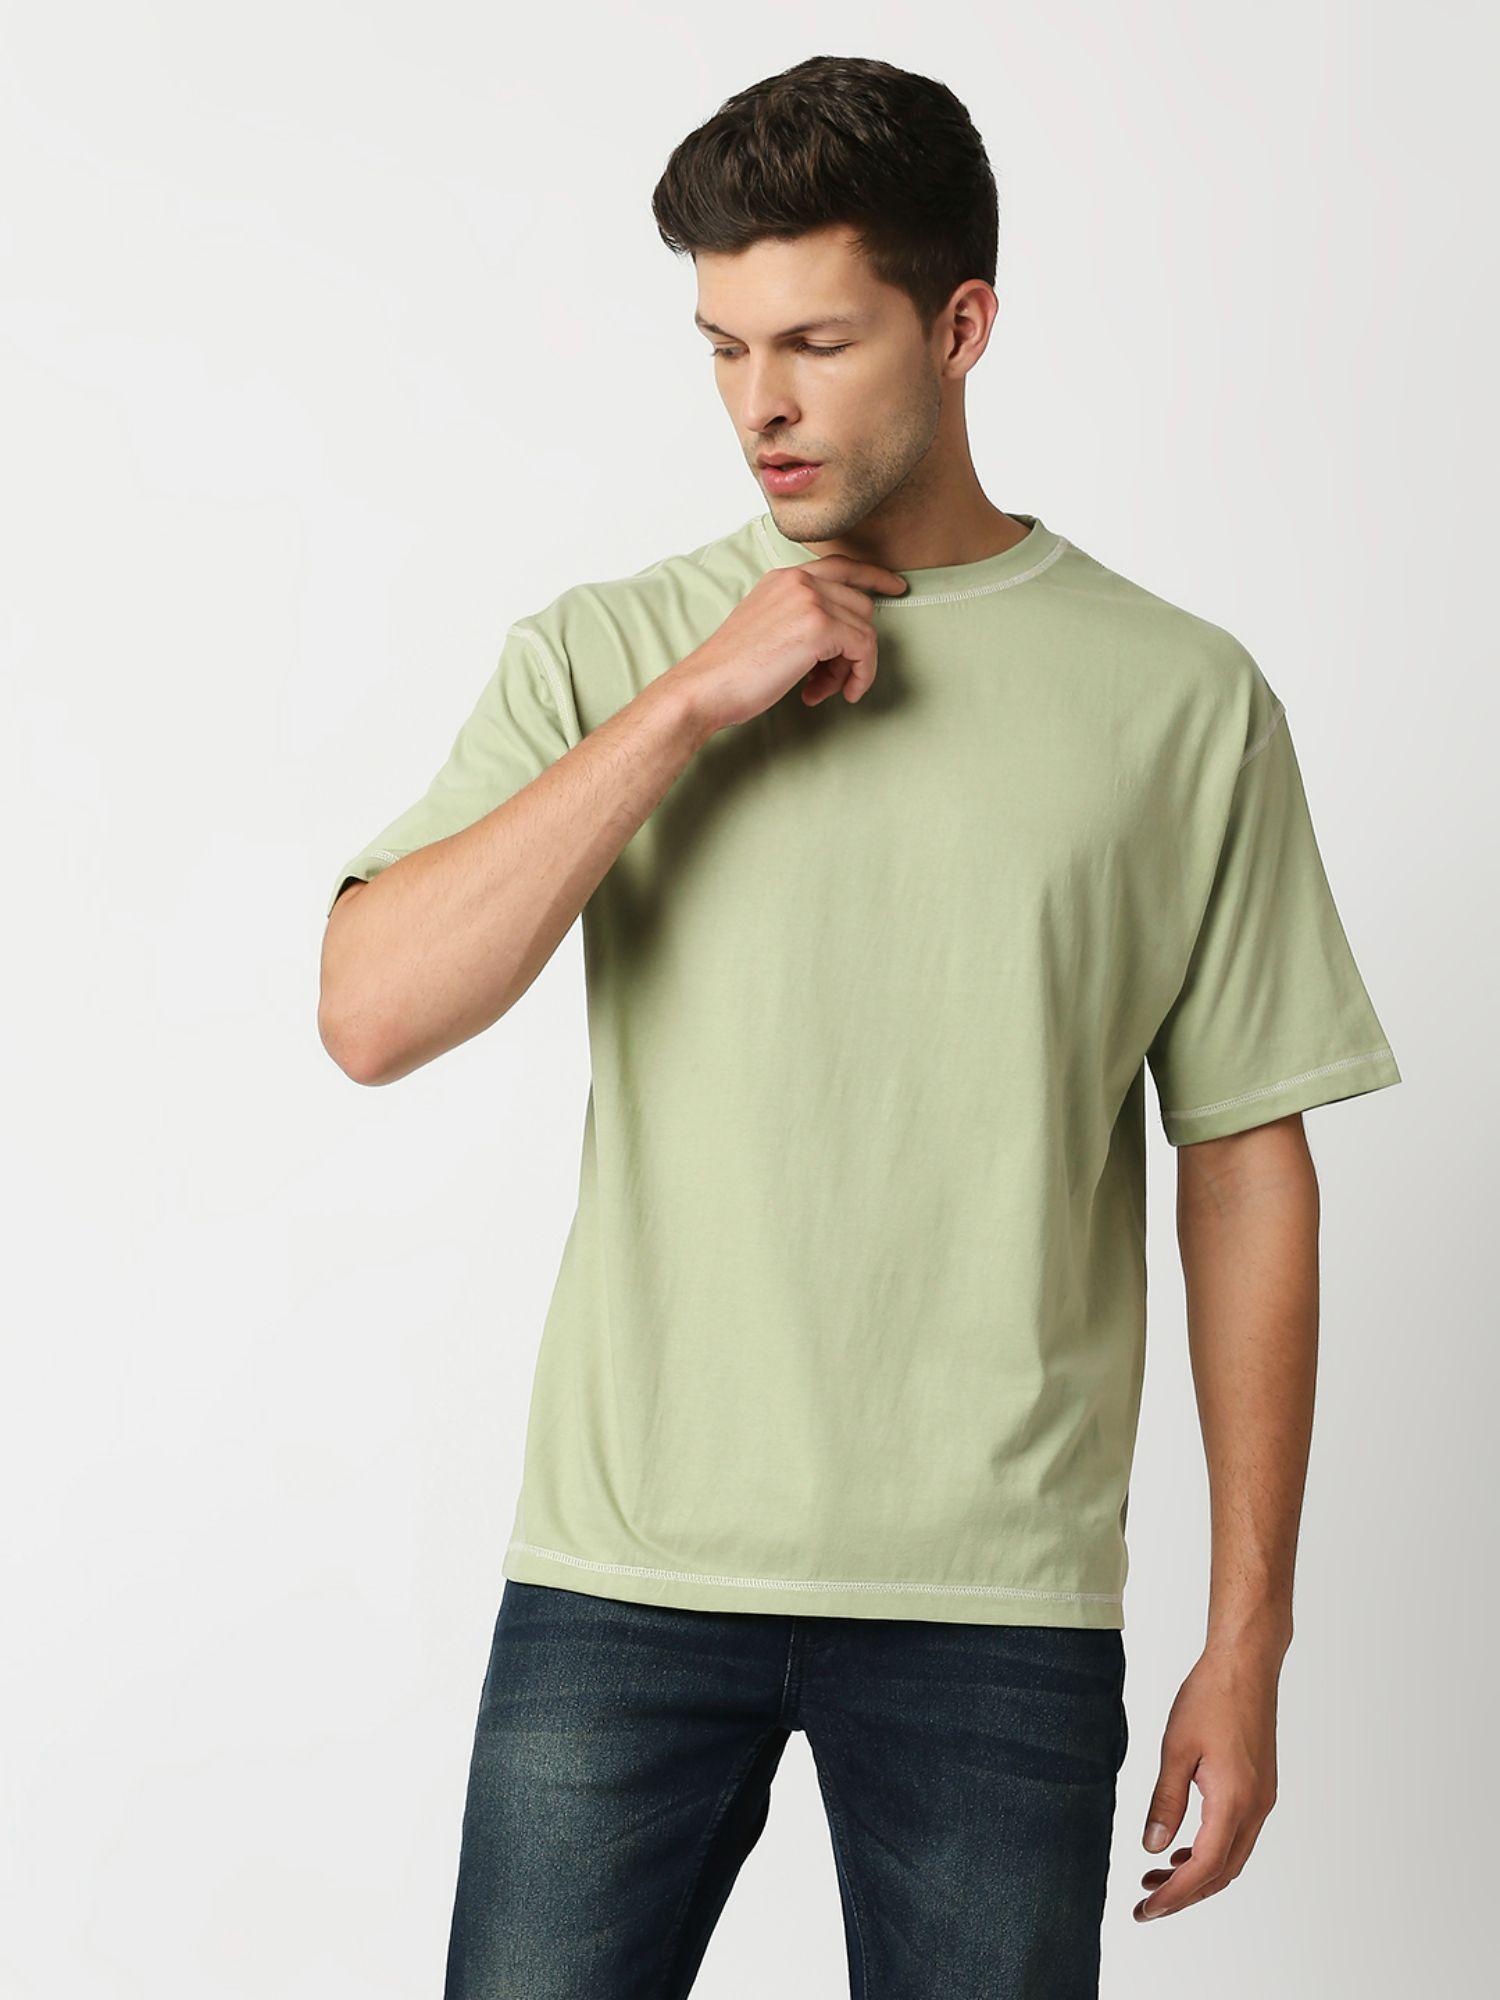 mens baggy light green color t shirt